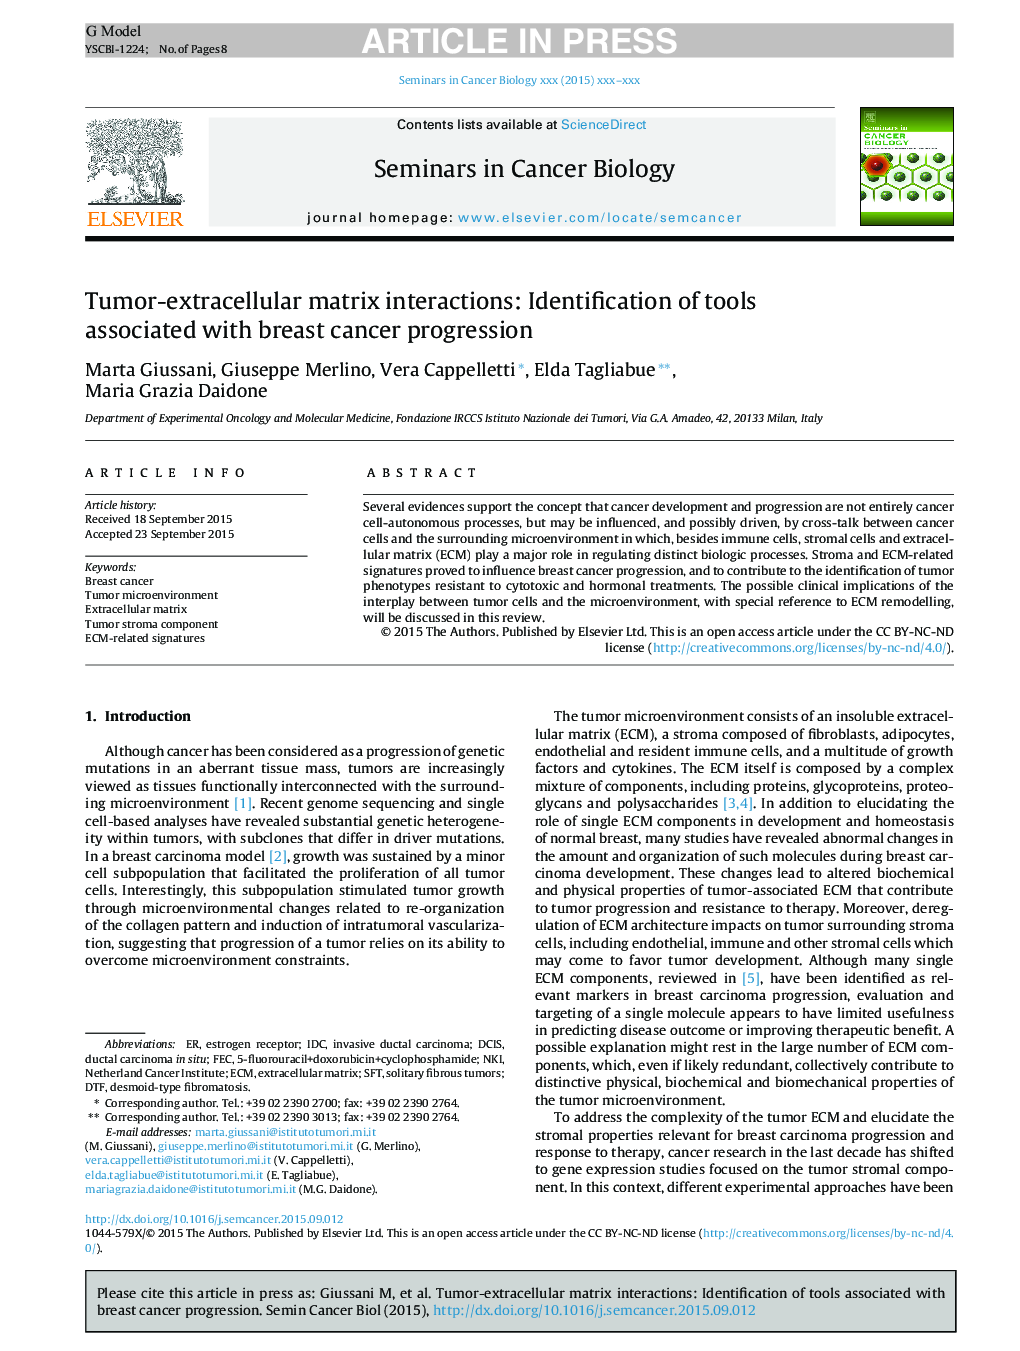 تعاملات ماتریکس خارج سلولی تومور: شناسایی ابزارهای مرتبط با پیشرفت سرطان پستان 